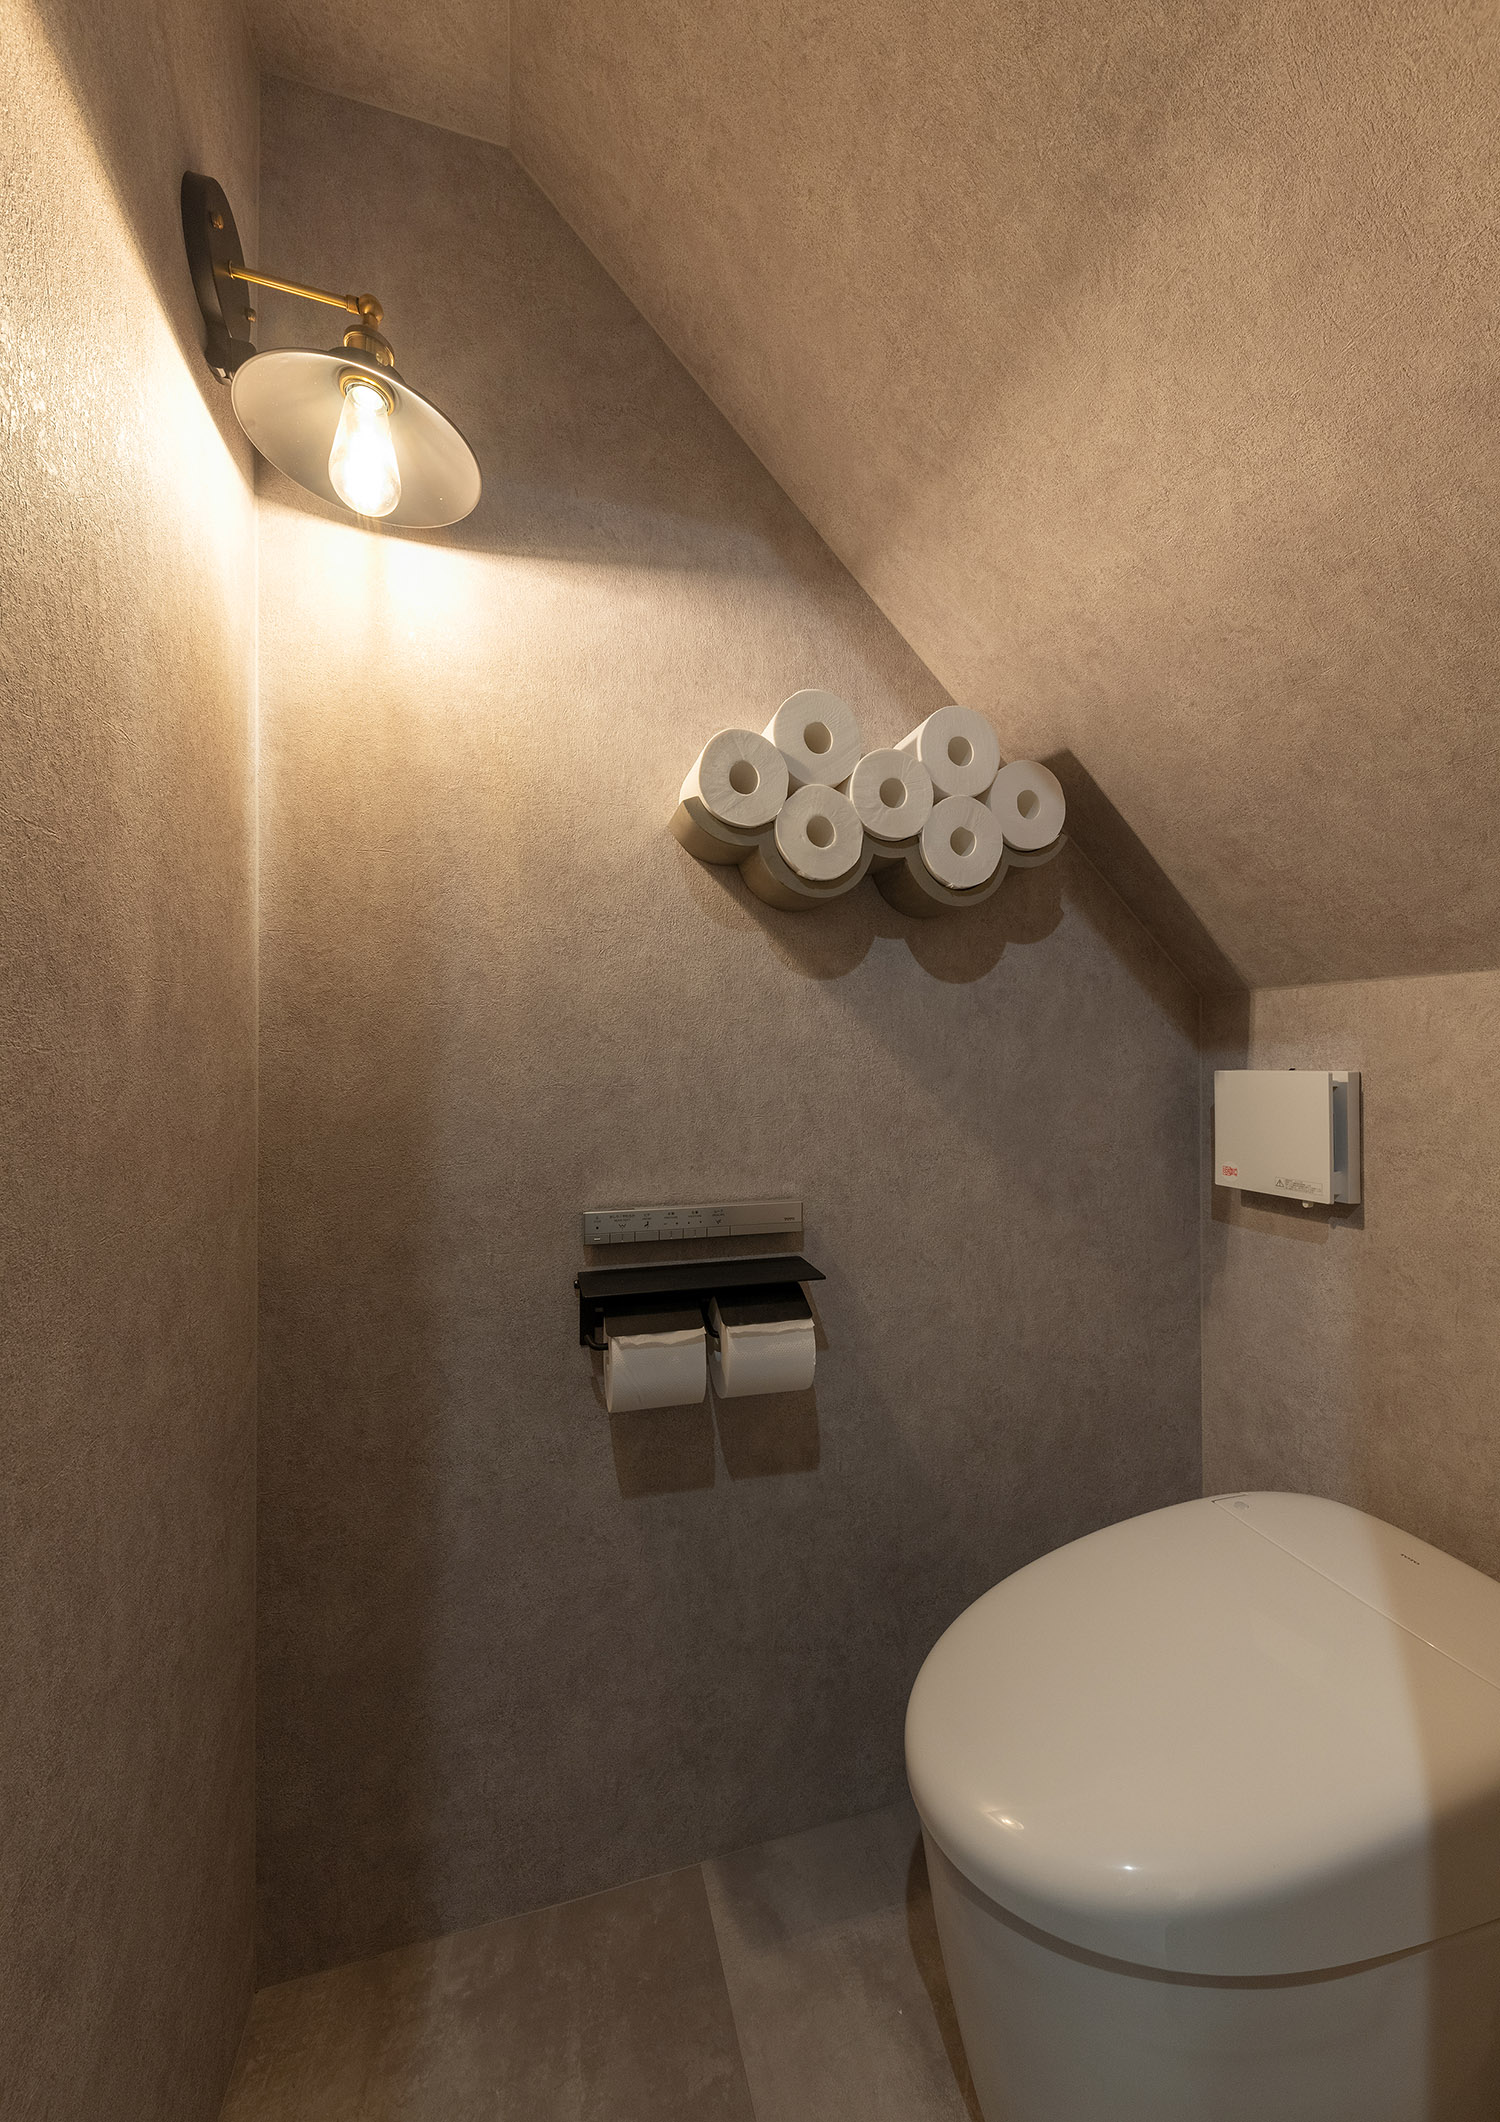 トイレットペーパー専用のおしゃれな収納や間接照明を取り付けた母屋下がりのトイレ・デザイン住宅